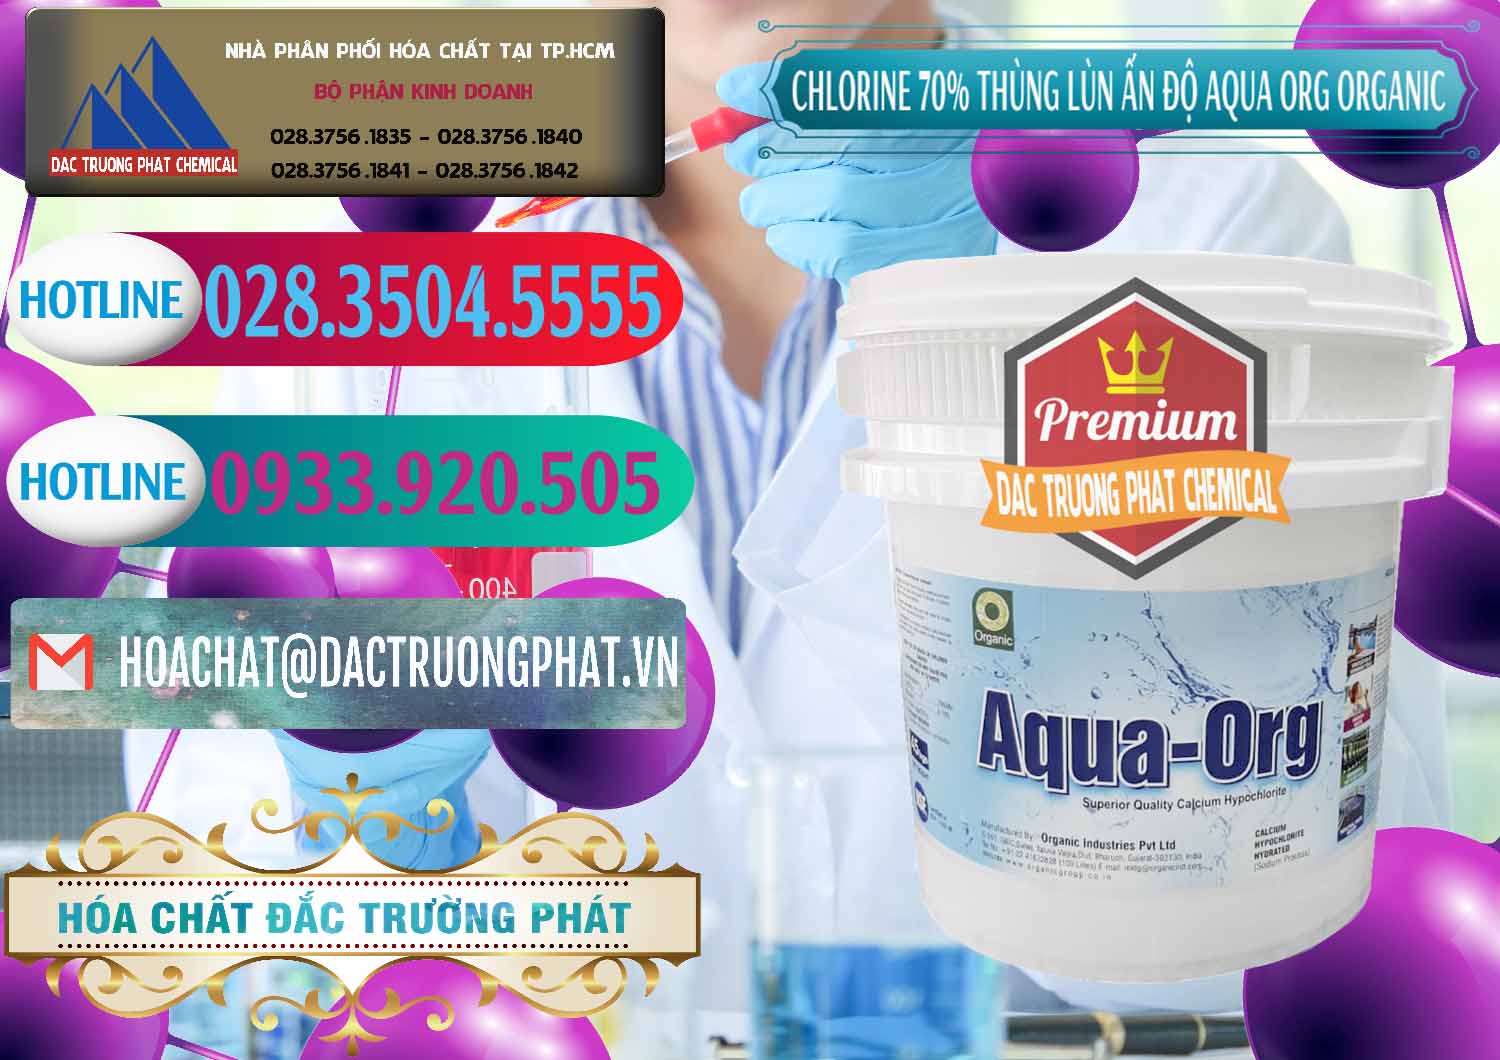 Cty cung cấp - bán Chlorine – Clorin 70% Thùng Lùn Ấn Độ Aqua ORG Organic India - 0212 - Đơn vị nhập khẩu ( cung cấp ) hóa chất tại TP.HCM - truongphat.vn